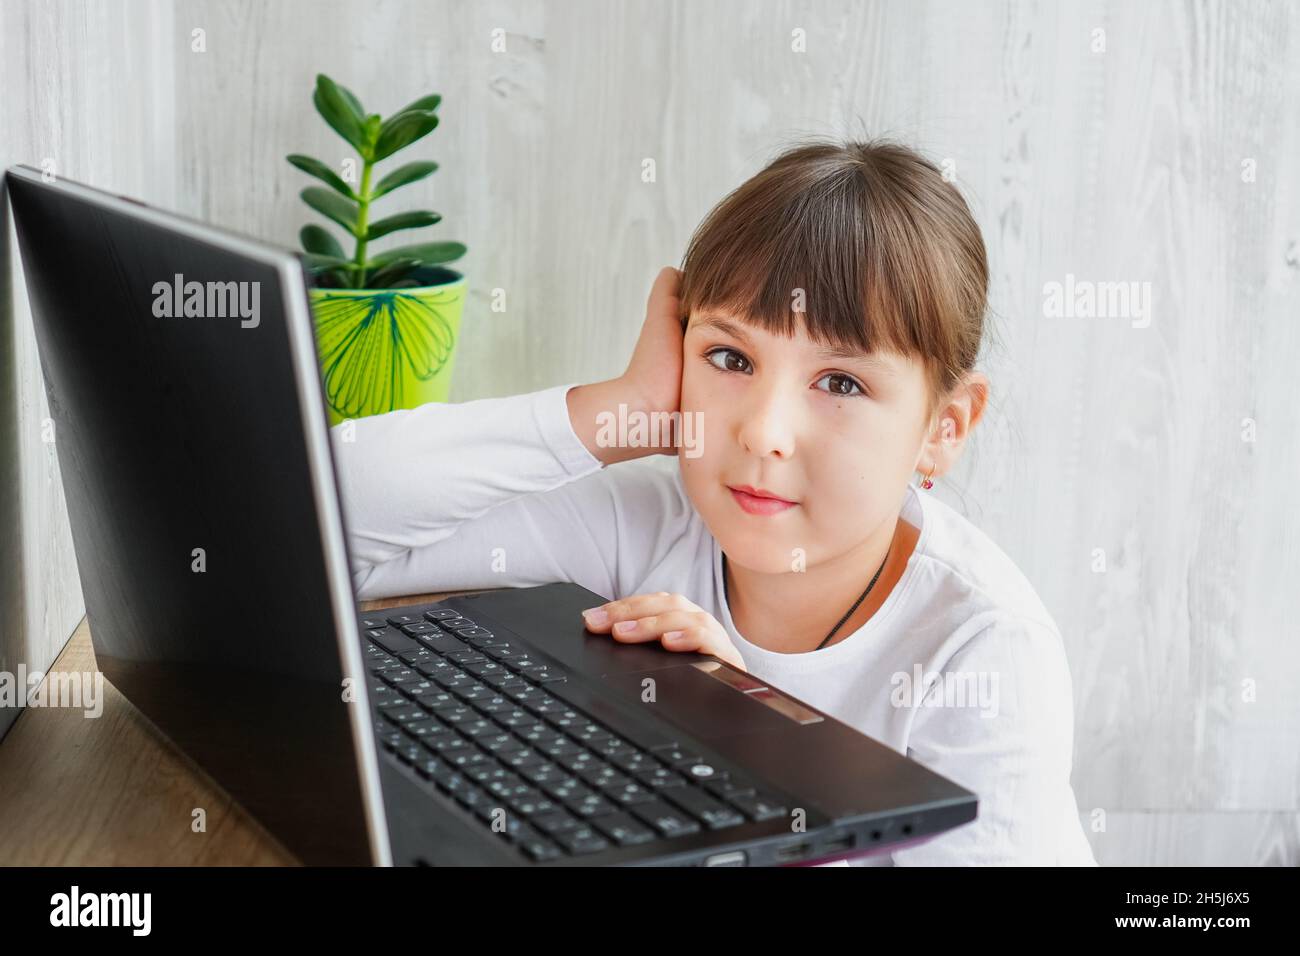 Scatto interno del bambino femmina pelato scuro carino seduto al tavolo vicino al notebook guardando la macchina fotografica mantenendo una mano sul viso Foto Stock